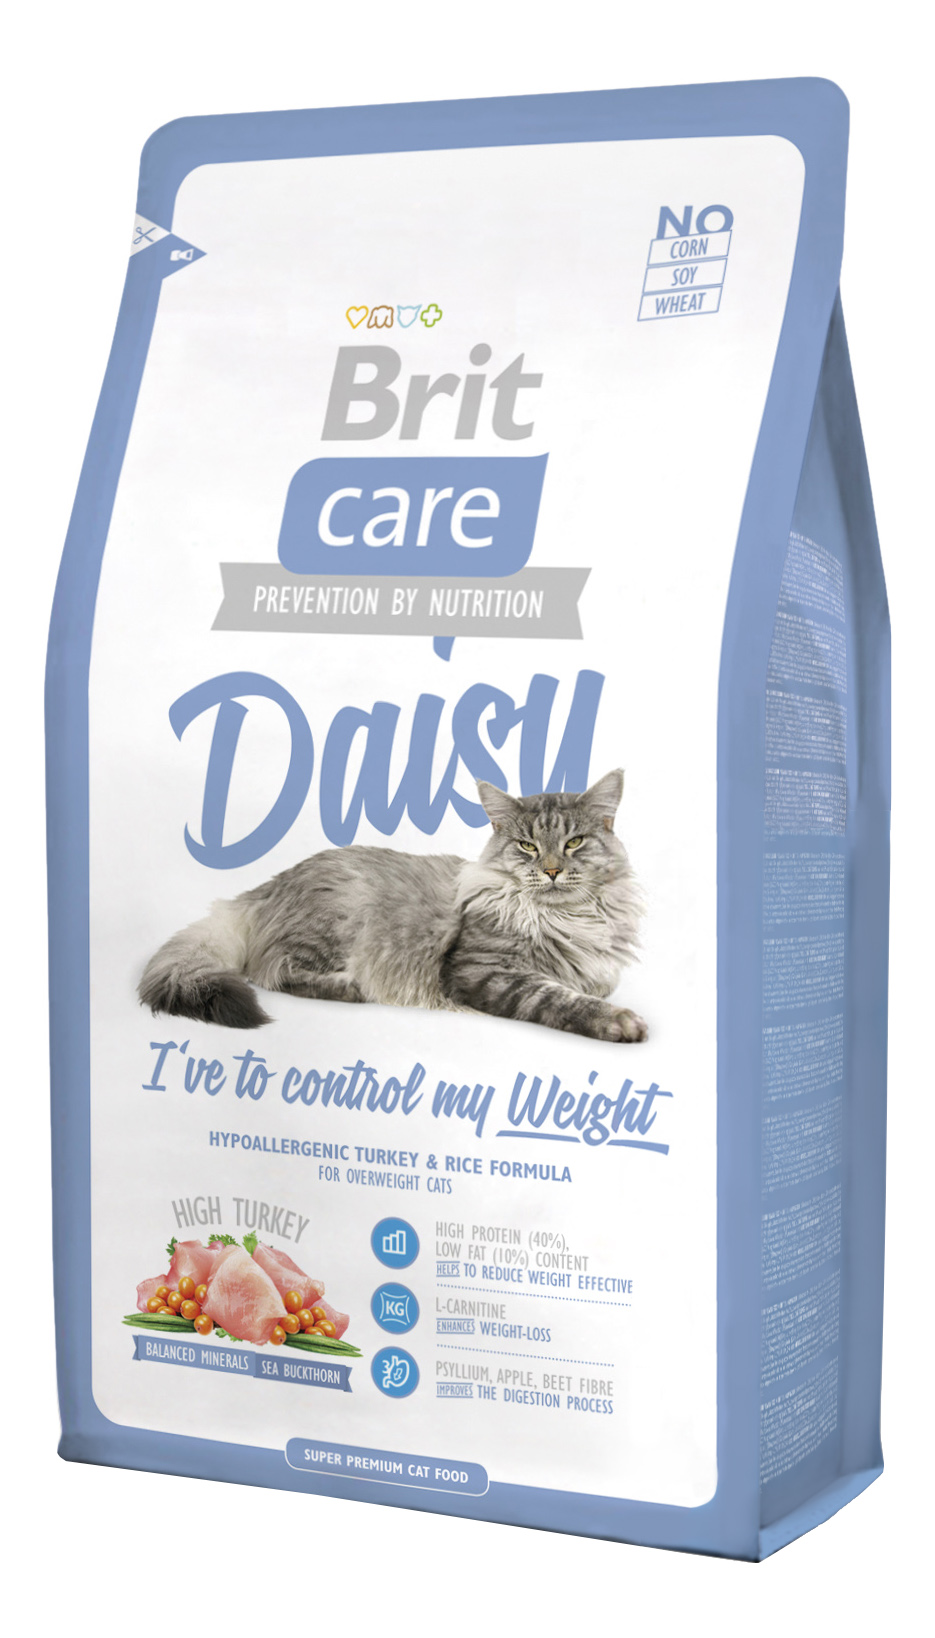 Купить Корм Brit Care Для Кошек